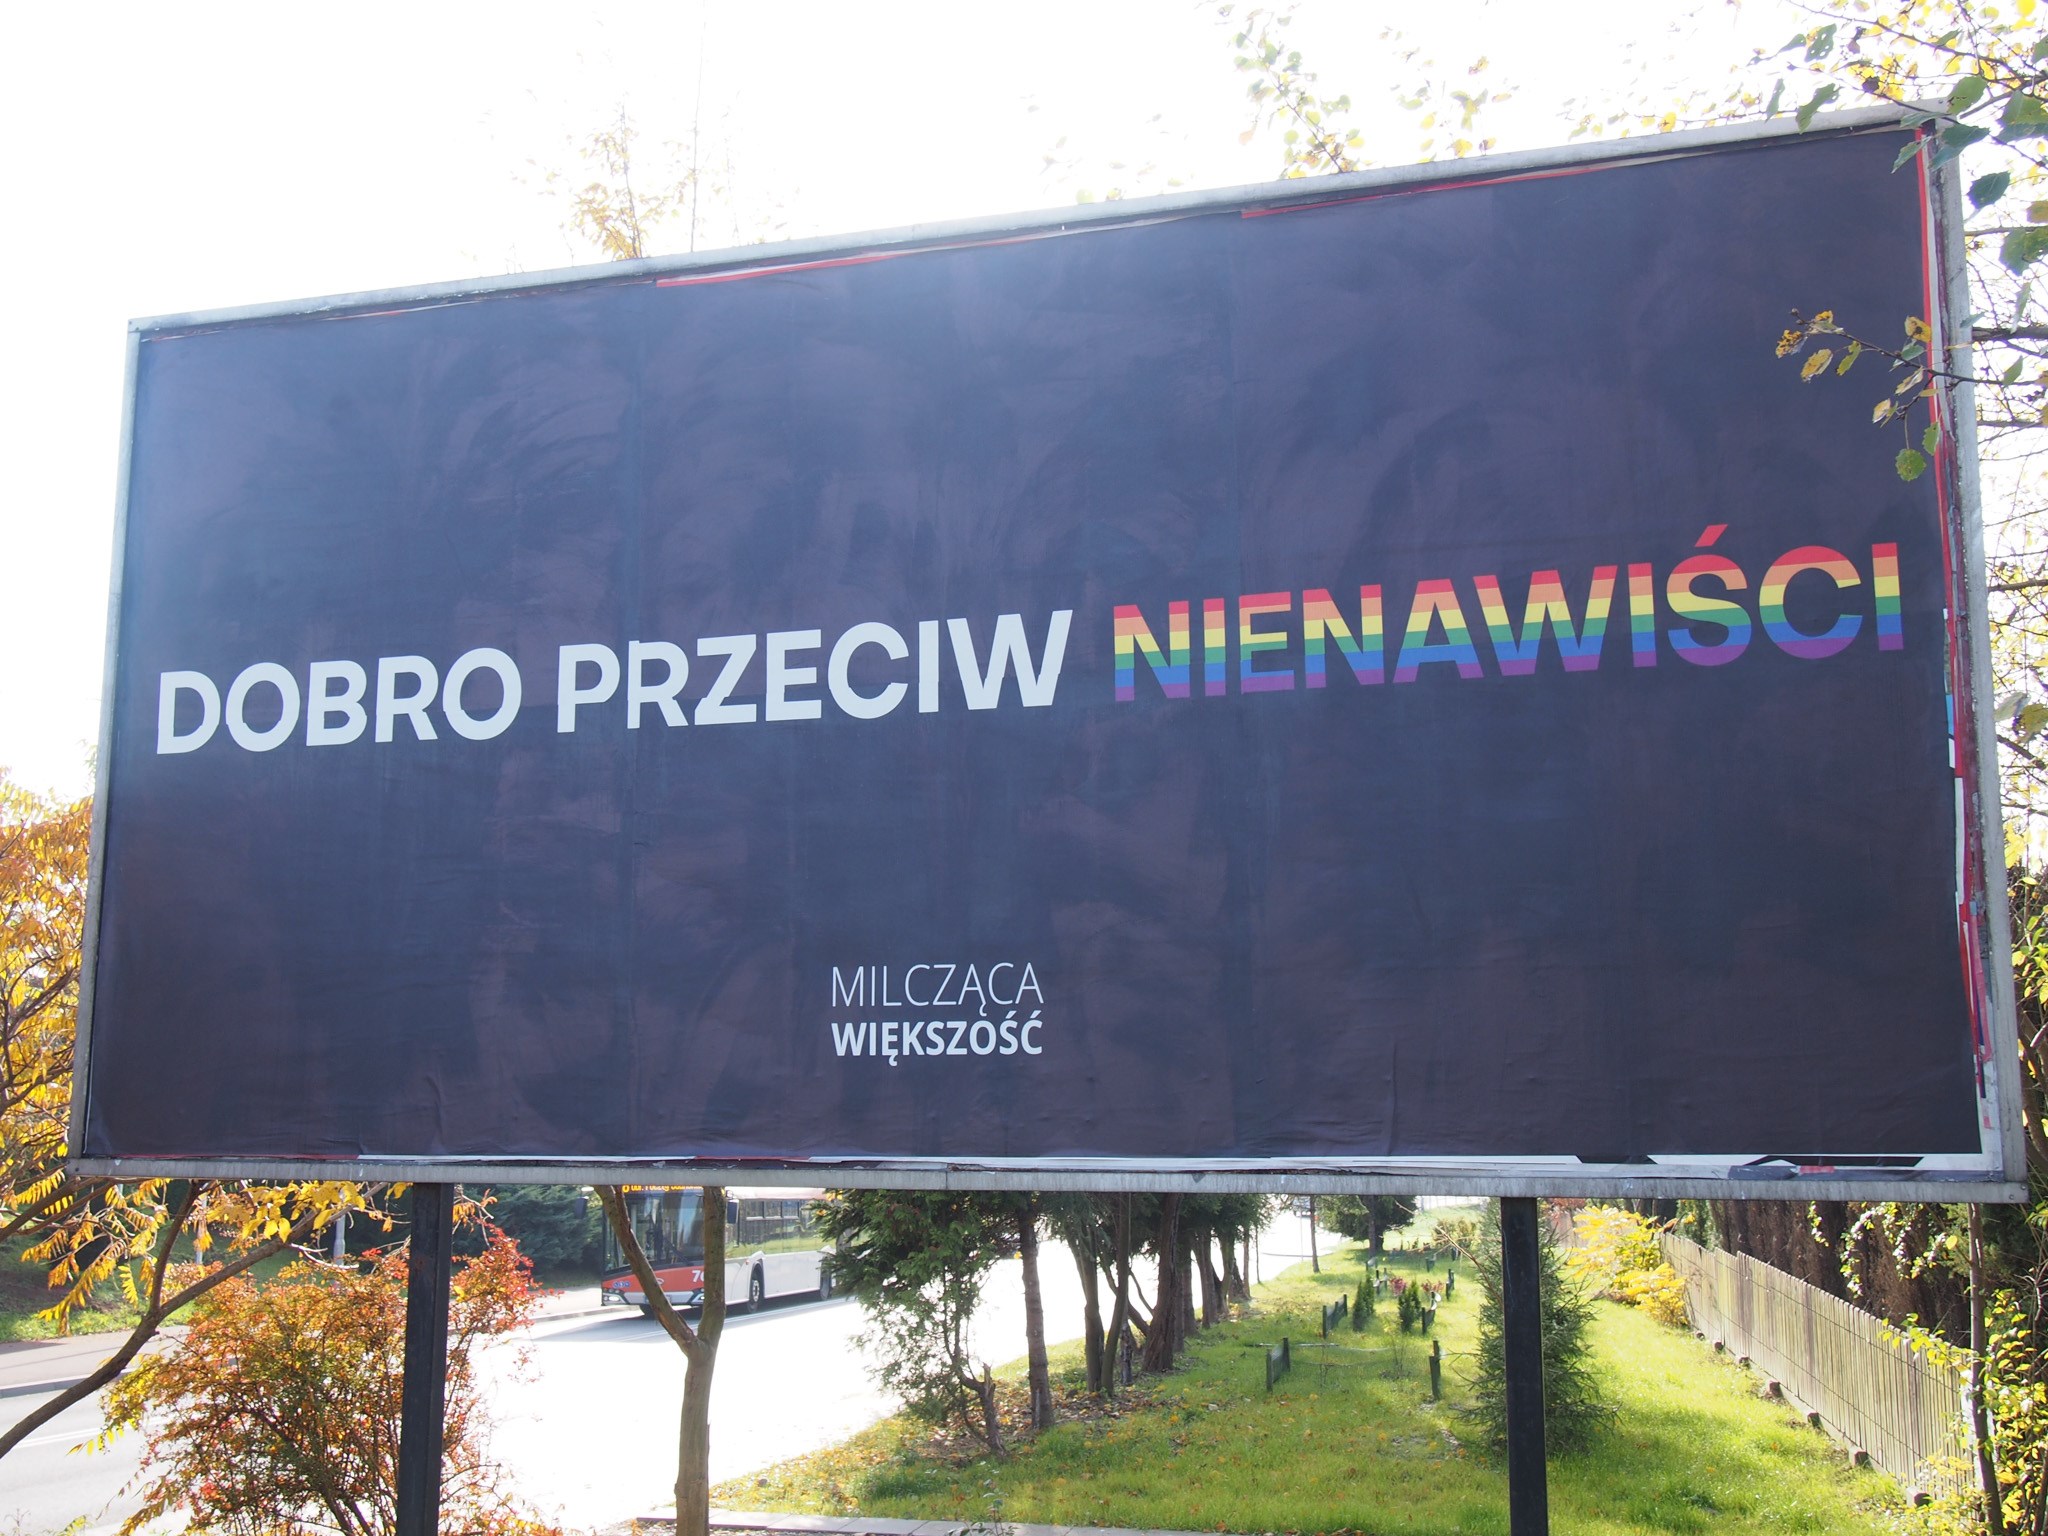 Kontrowersyjne napisy na billboardach w Rzeszowie. Kolejna forma mowy nienawiści? [FOTO] - Zdjęcie główne